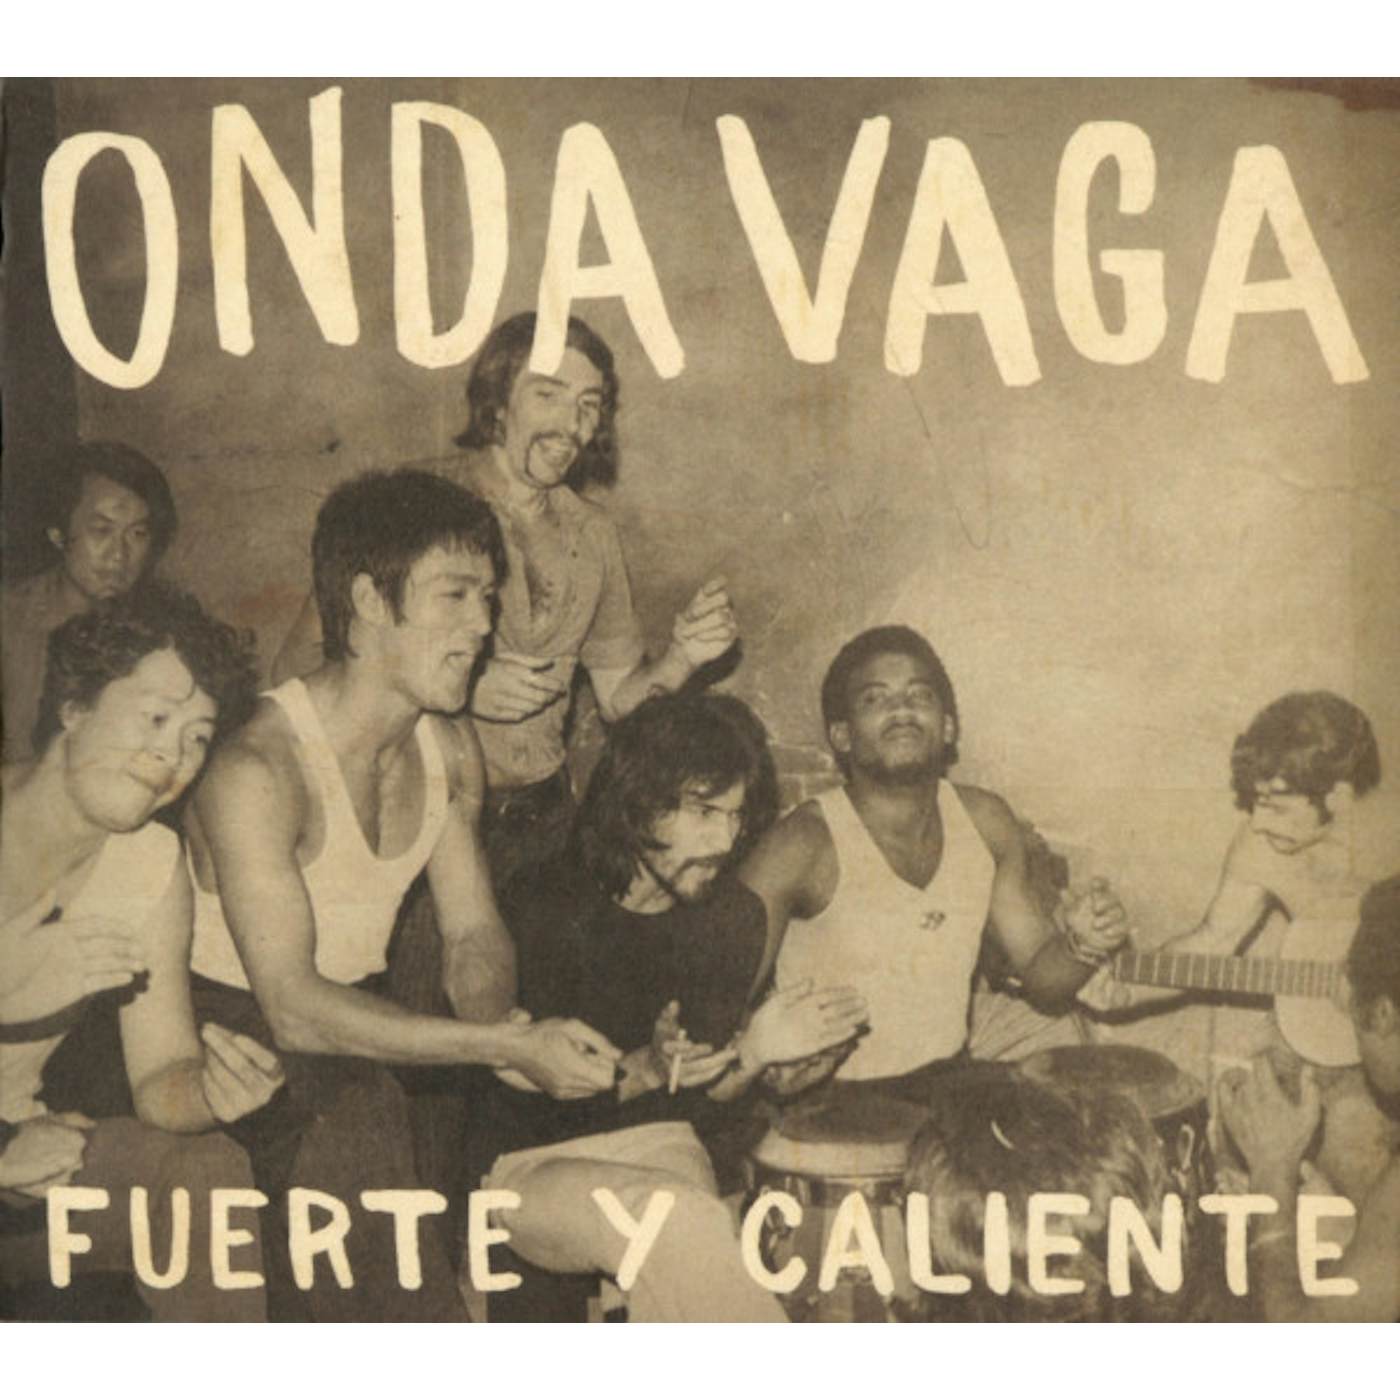 Onda Vaga Fuerte Y Caliente Vinyl Record